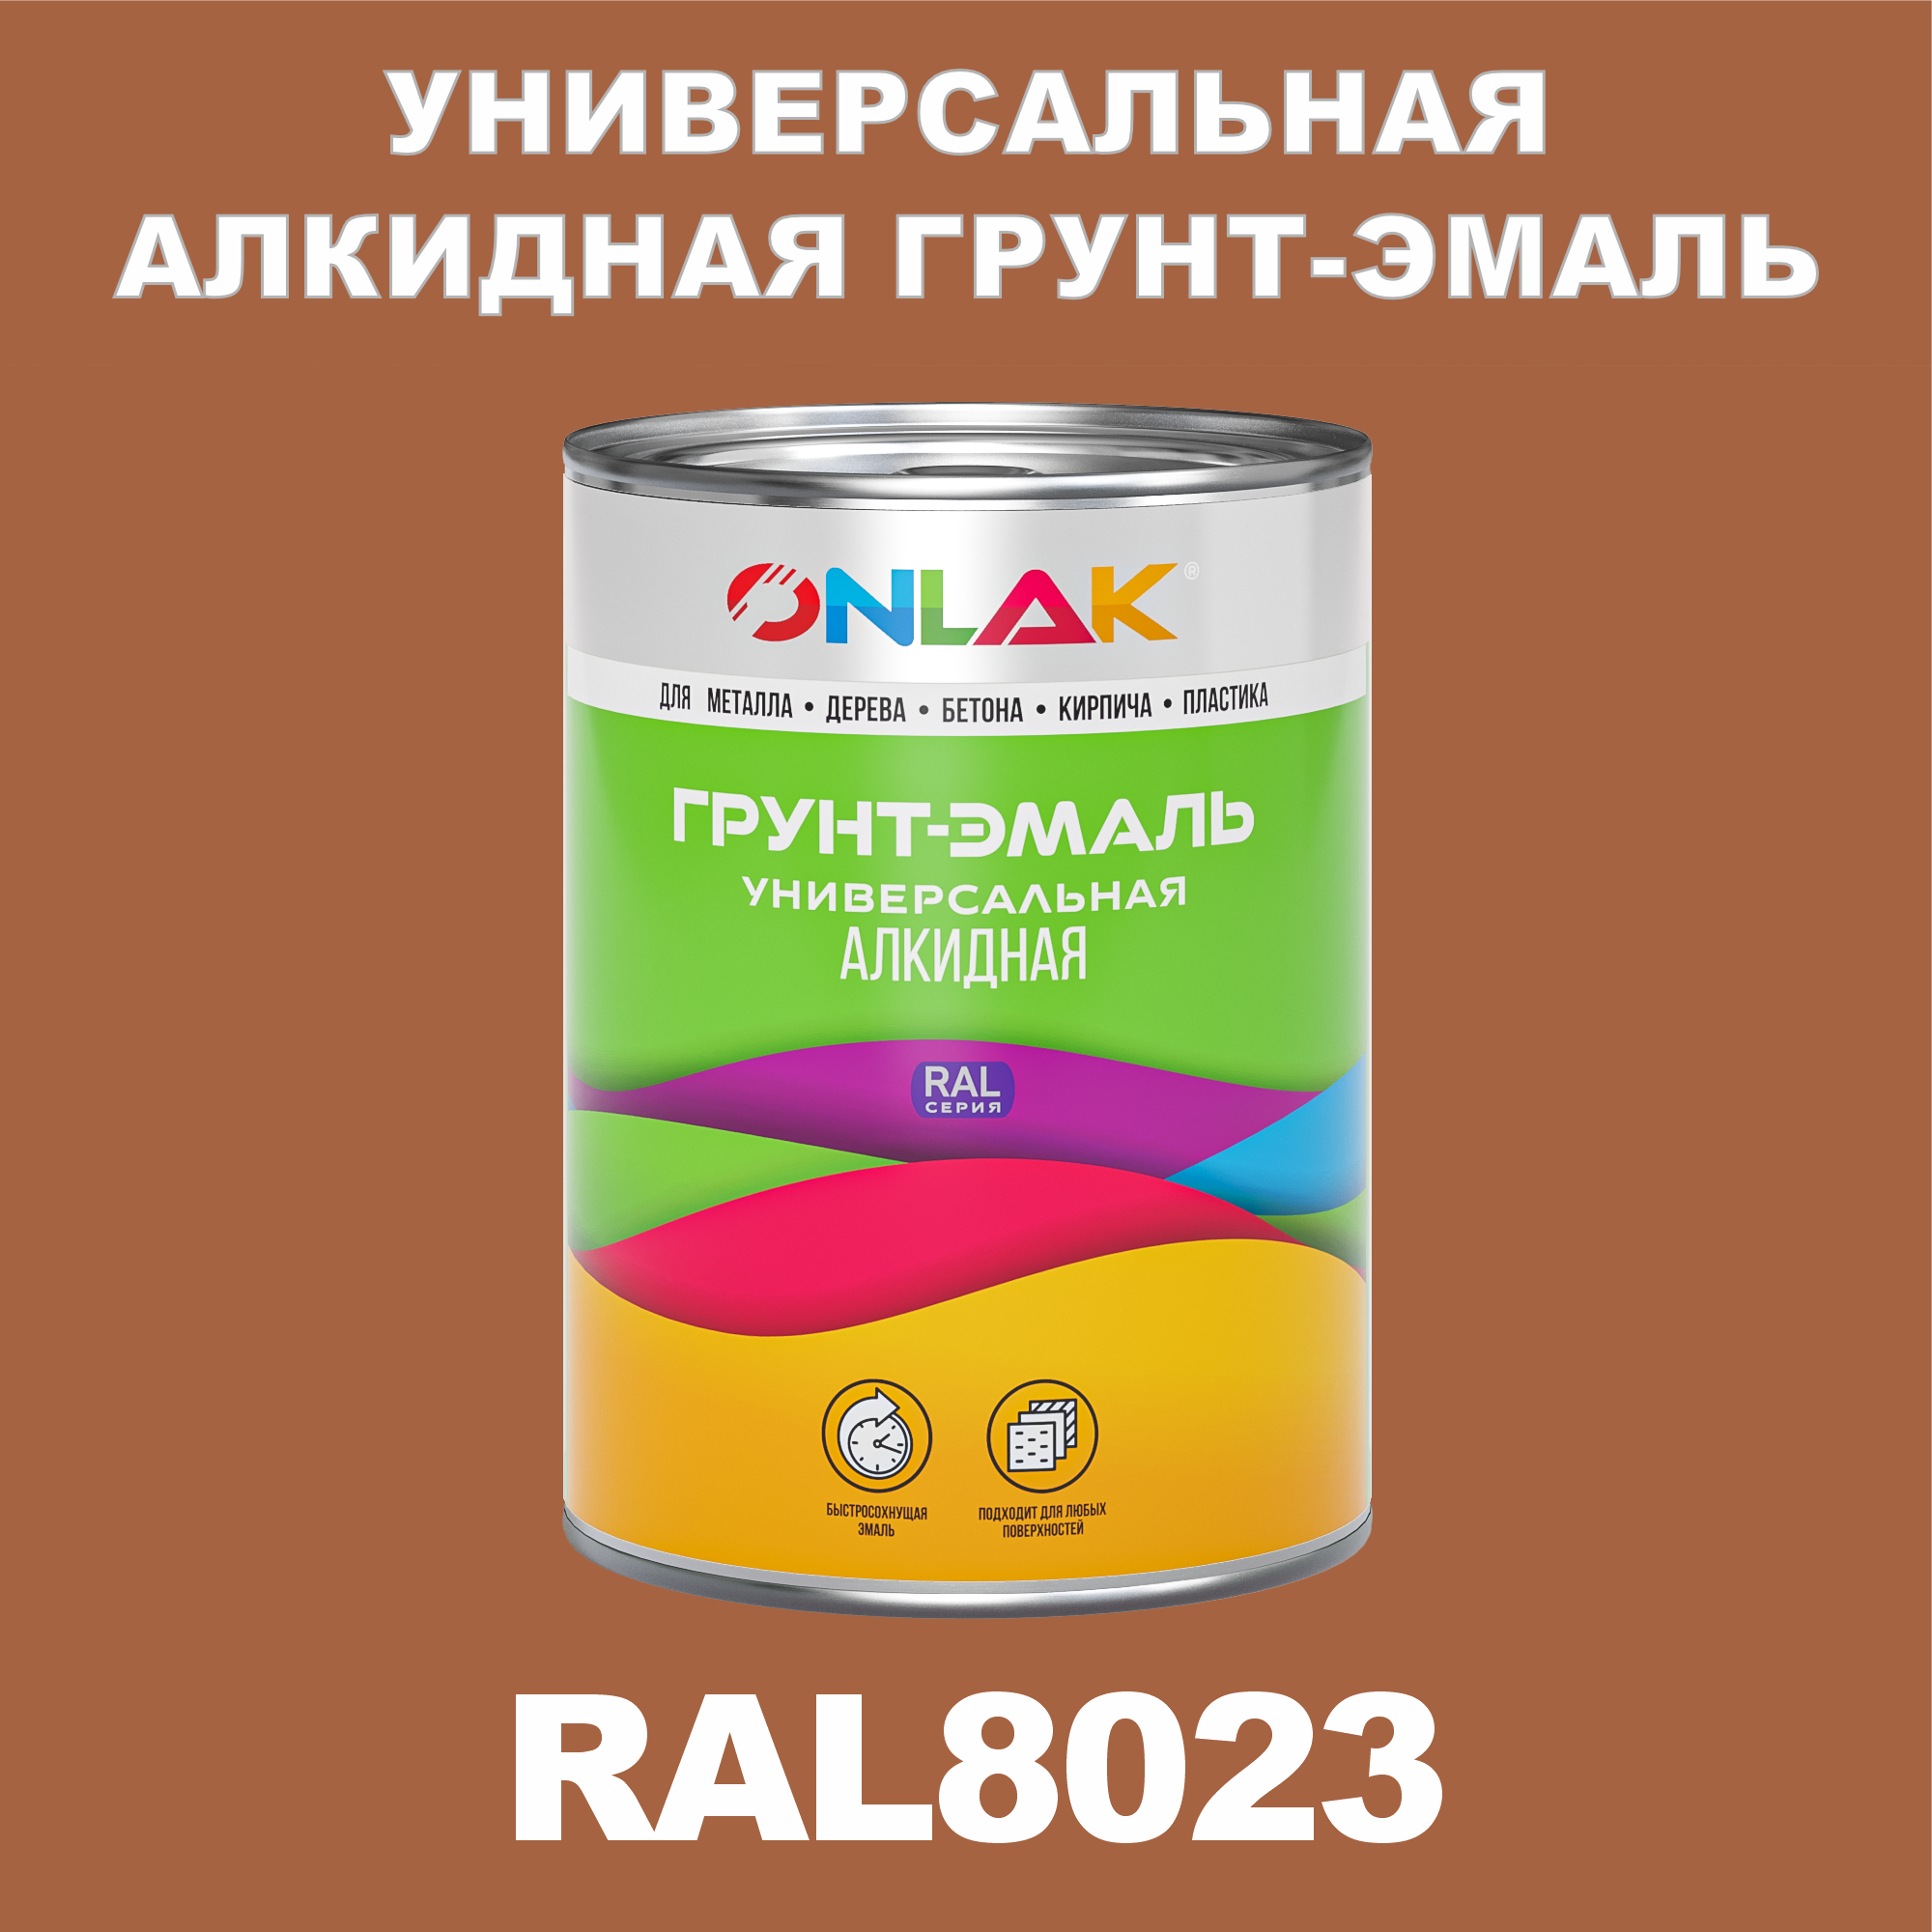 Грунт-эмаль ONLAK 1К RAL8023 антикоррозионная алкидная по металлу по ржавчине 1 кг грунт эмаль neomid по ржавчине быстросохнущая алкидная серая 0 9 кг